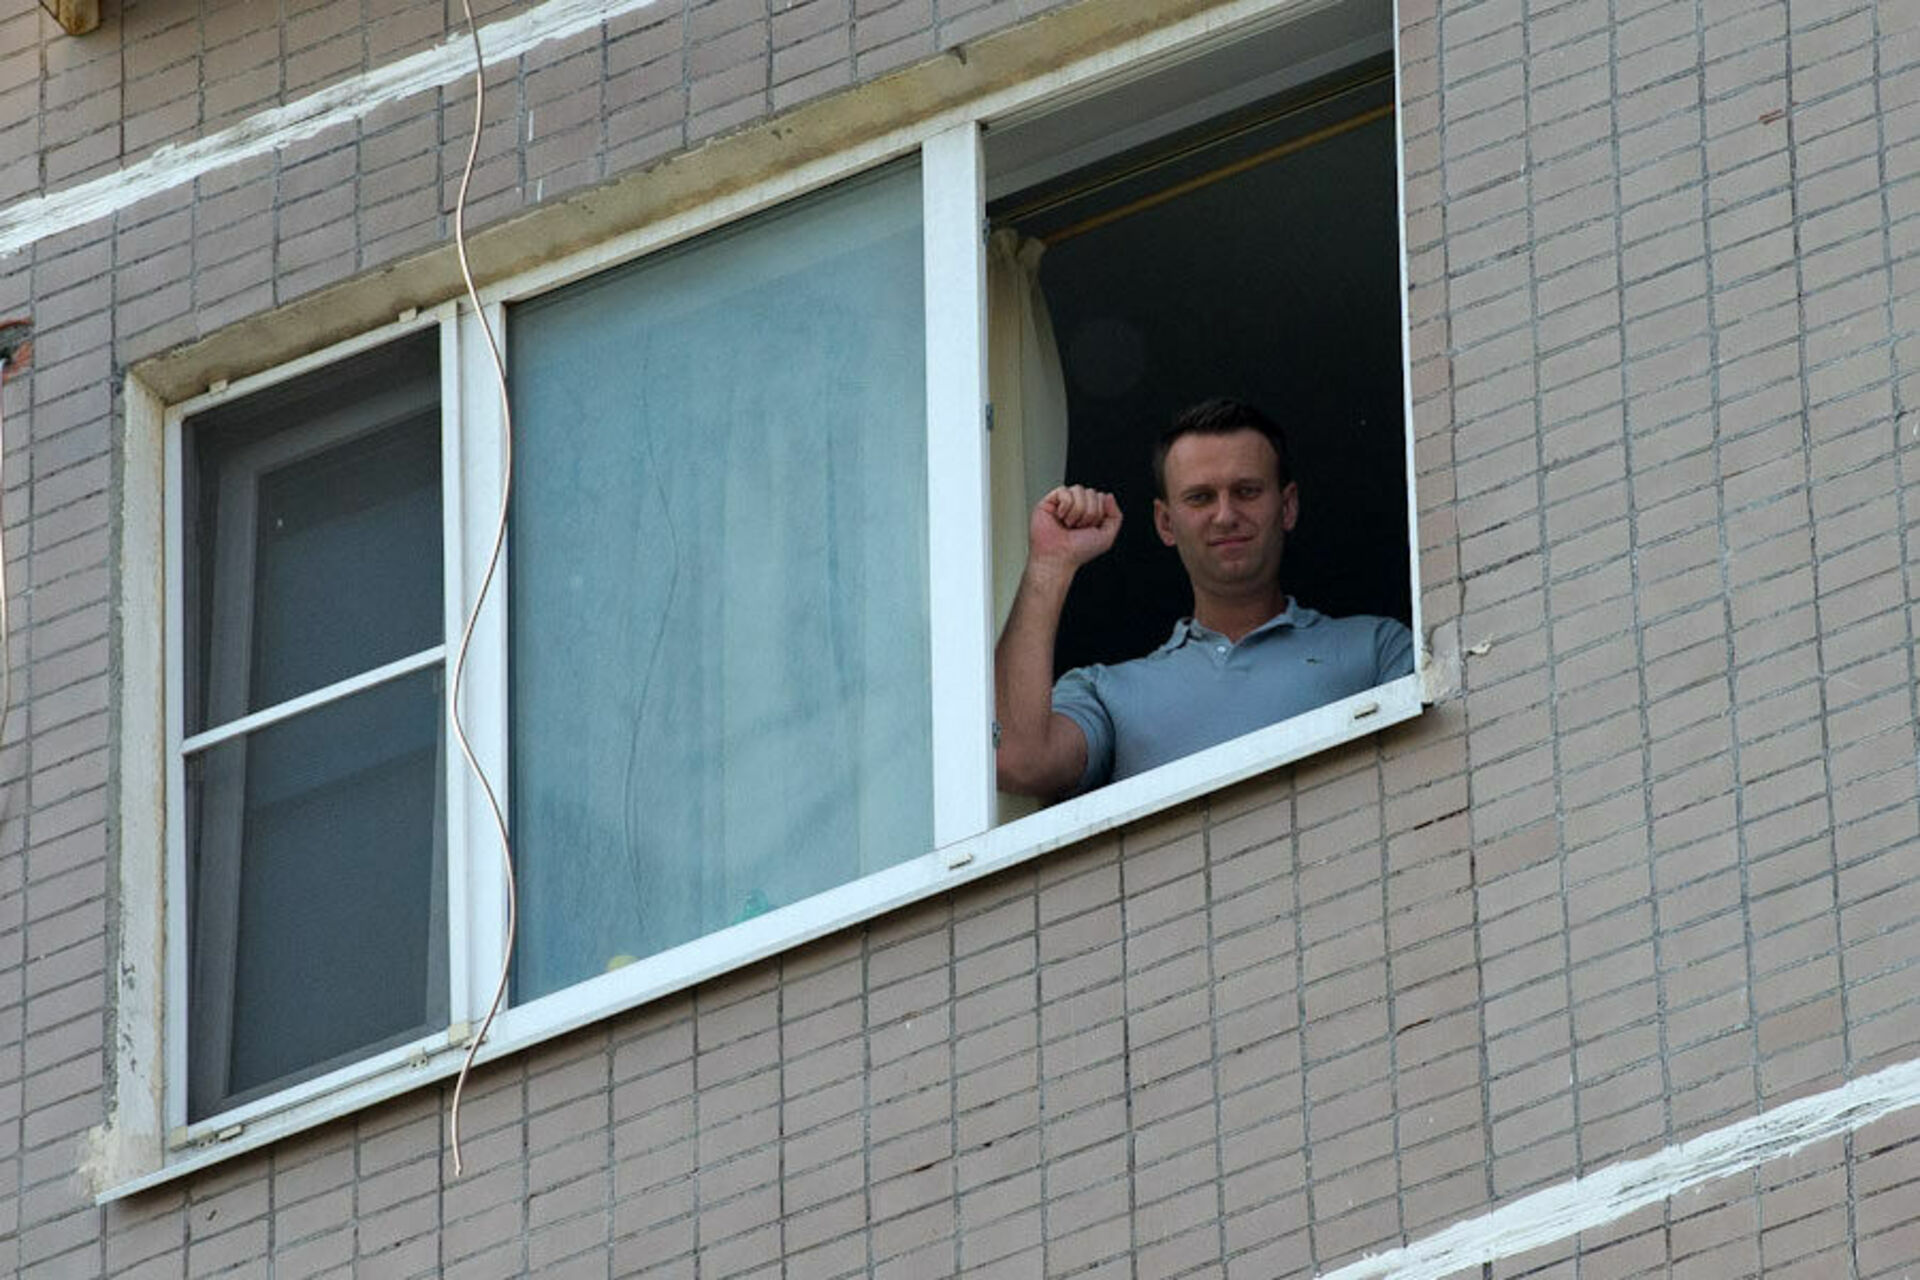 Где дом навального. Дом Алексея Навального. Дом Навального в Марьино. Навальный в окне. Человек у окна.